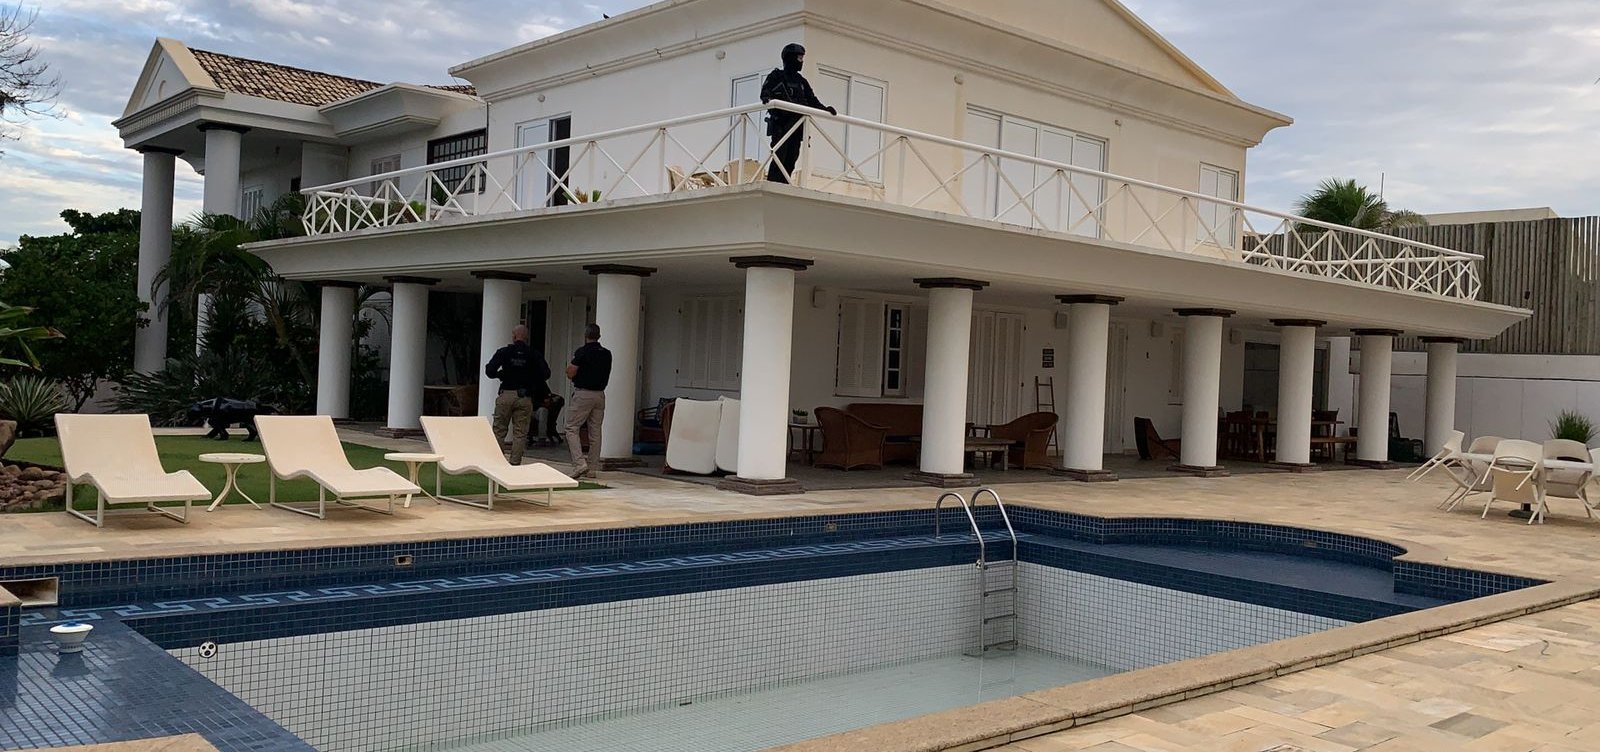 Empresário preso com arma em mansão em Lauro de Freitas é vítima, diz defesa